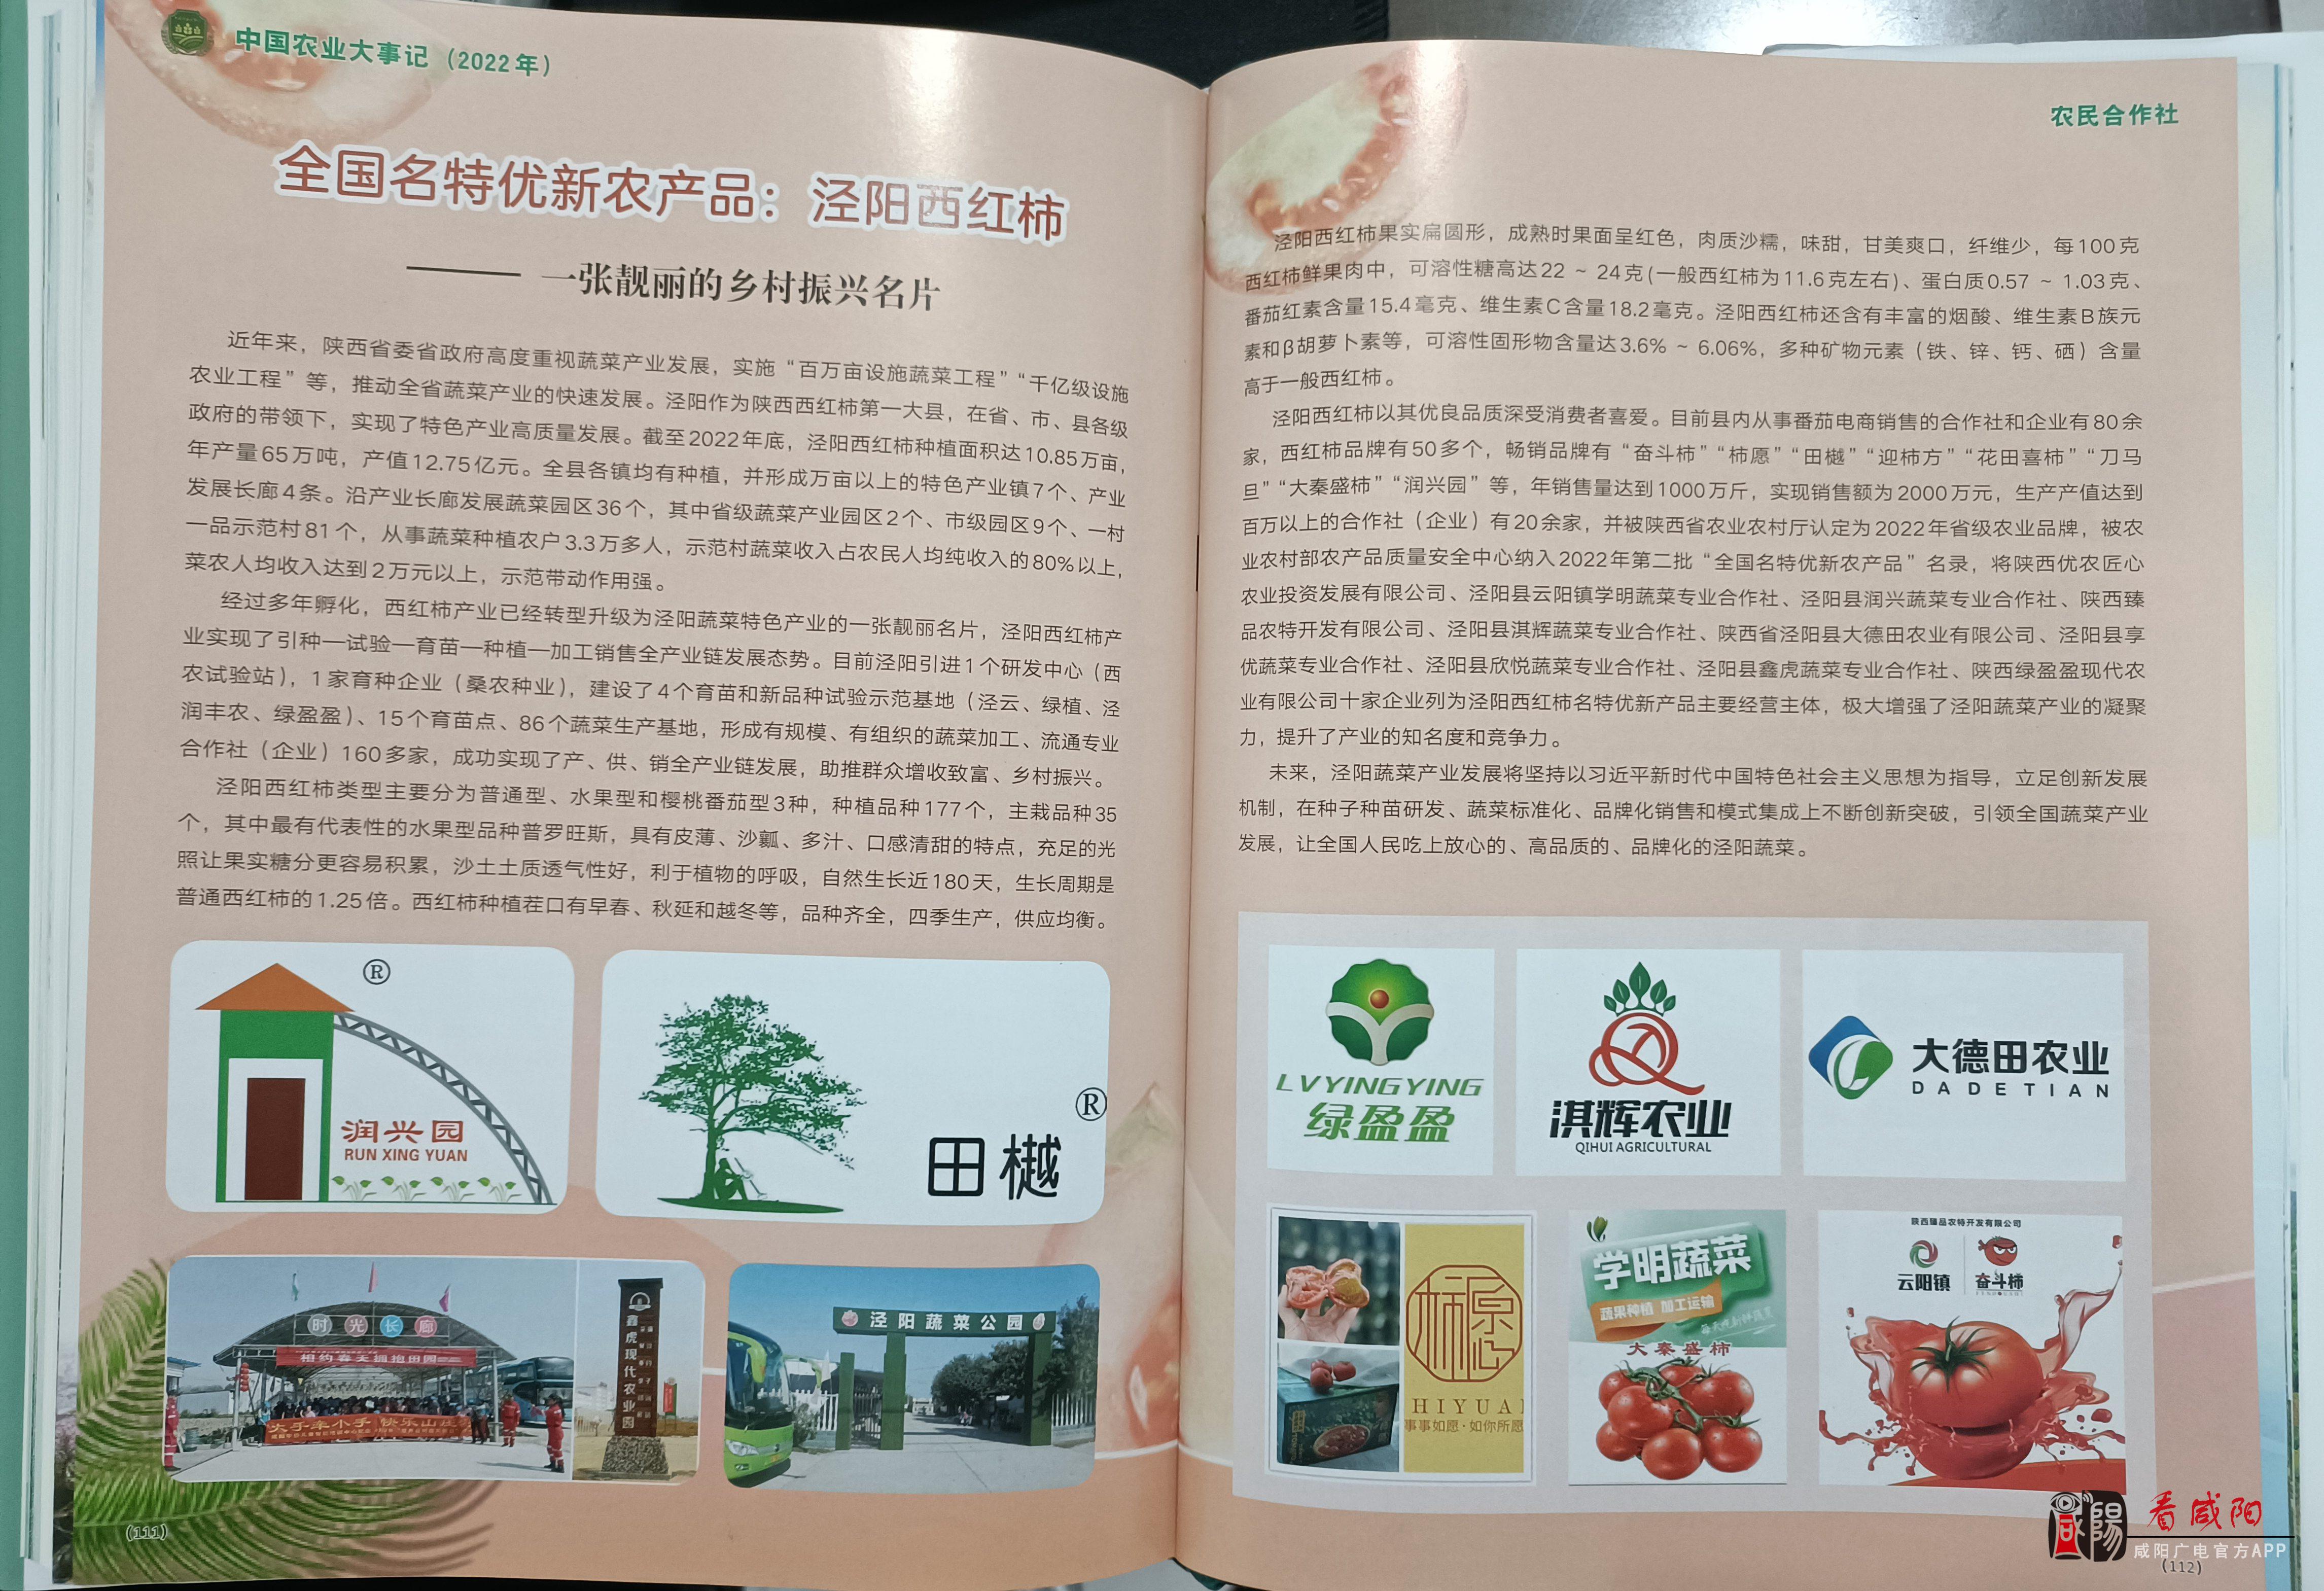 《全国名特优农产品——泾阳西红柿》编入《中国农业大事记》一书